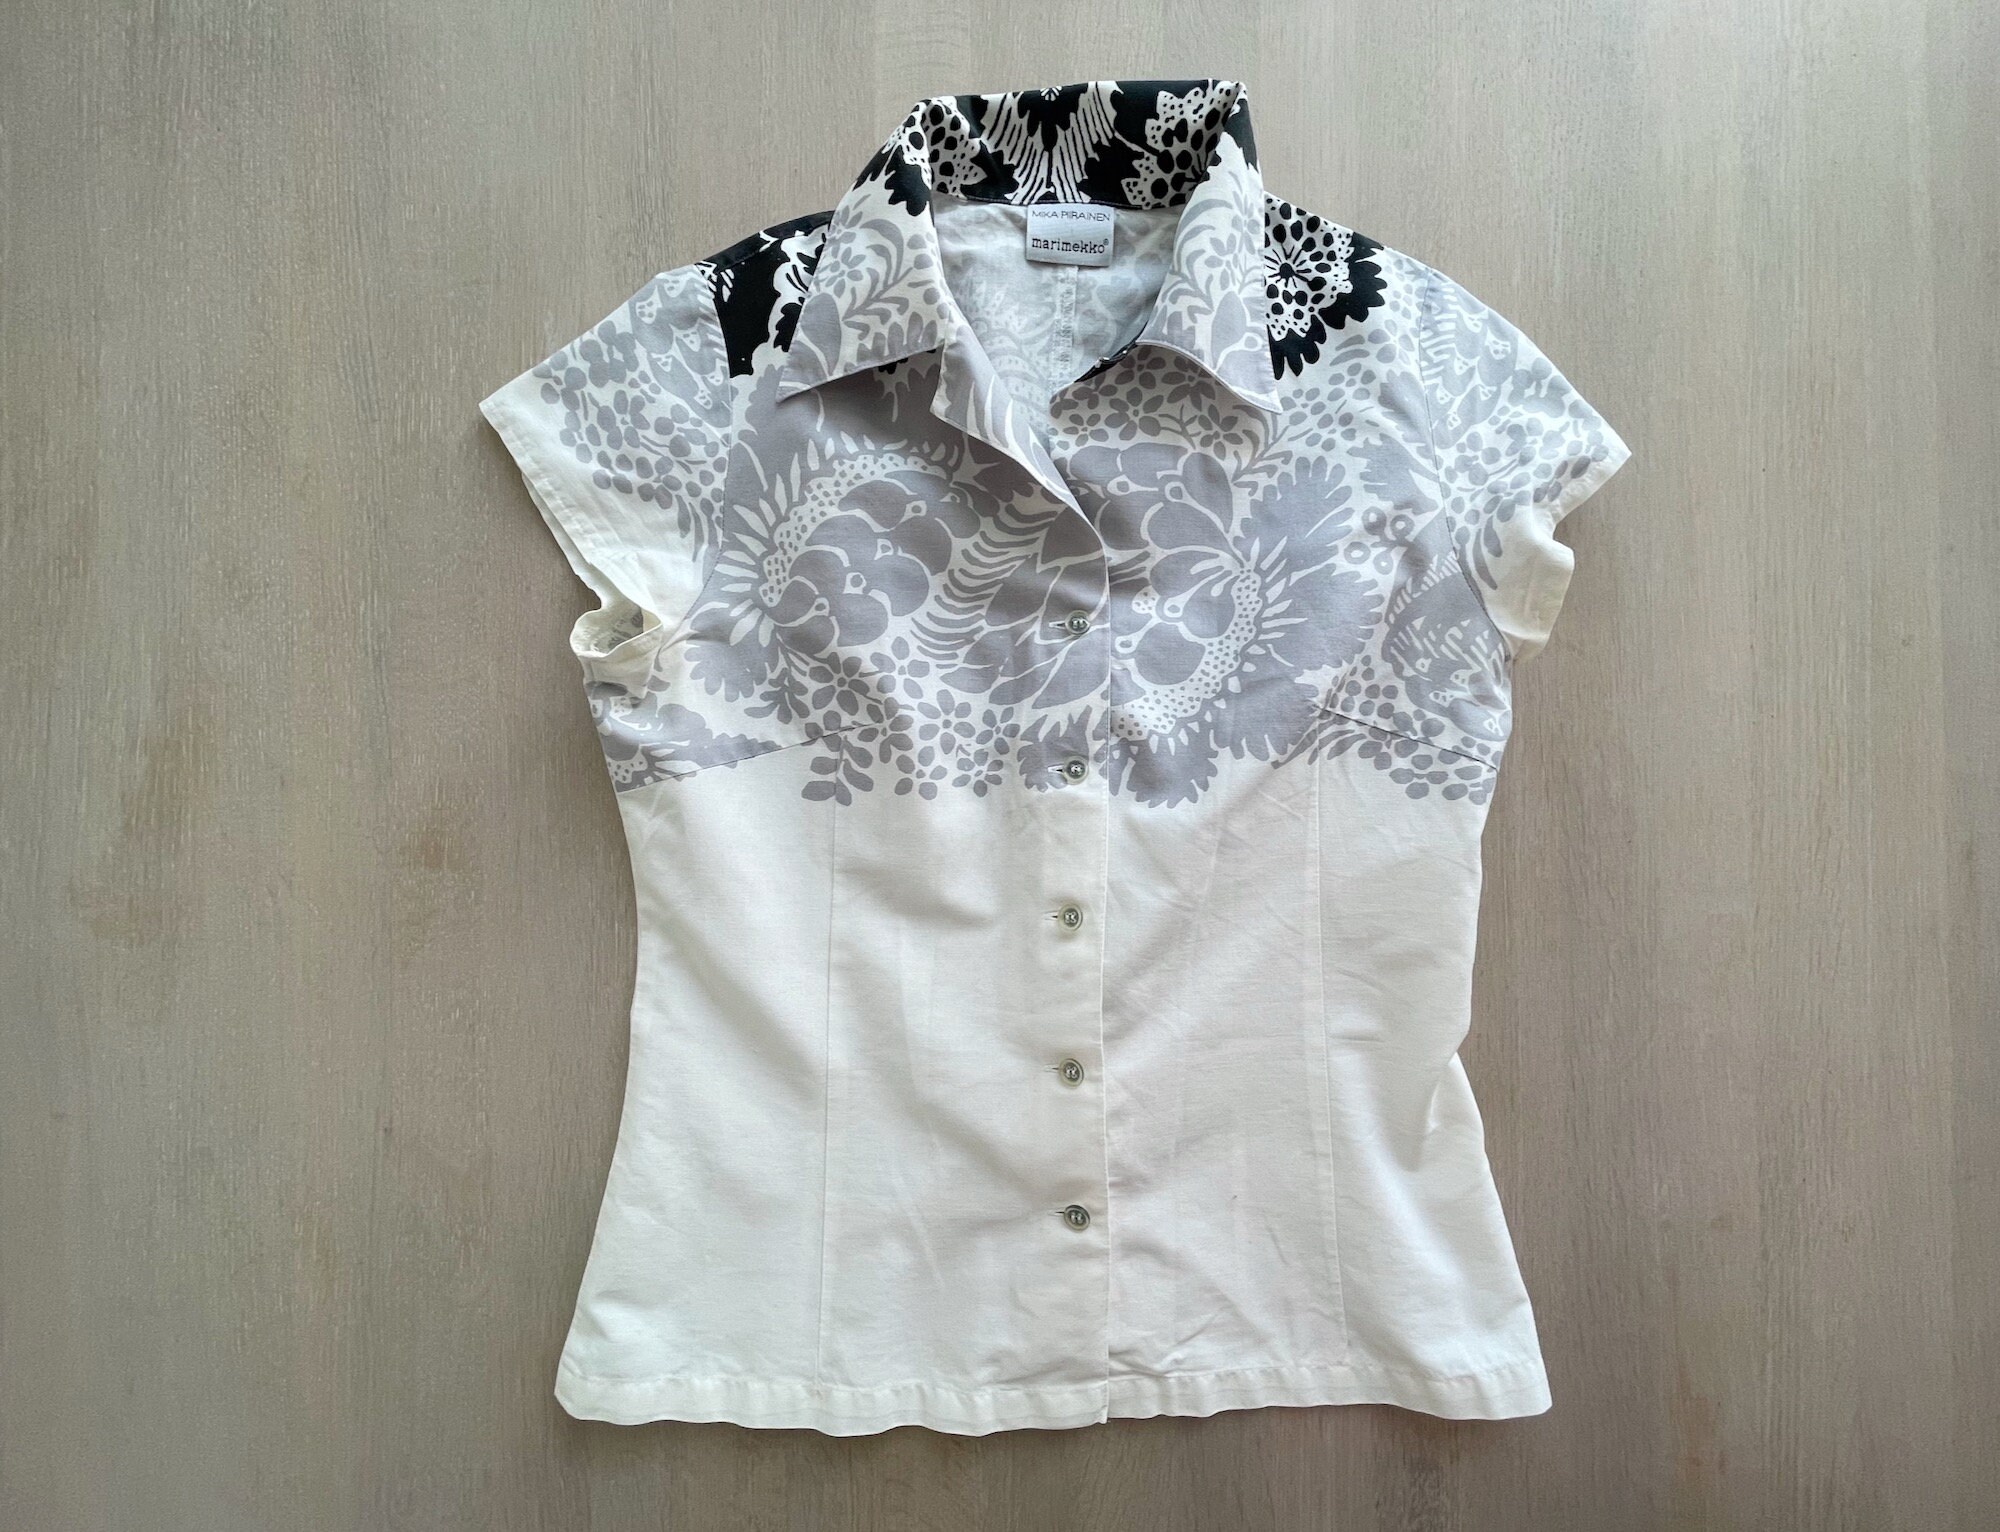 MARIMEKKO Button Down Shirt Floral Short Sleeve Cotton Shirt - Etsy